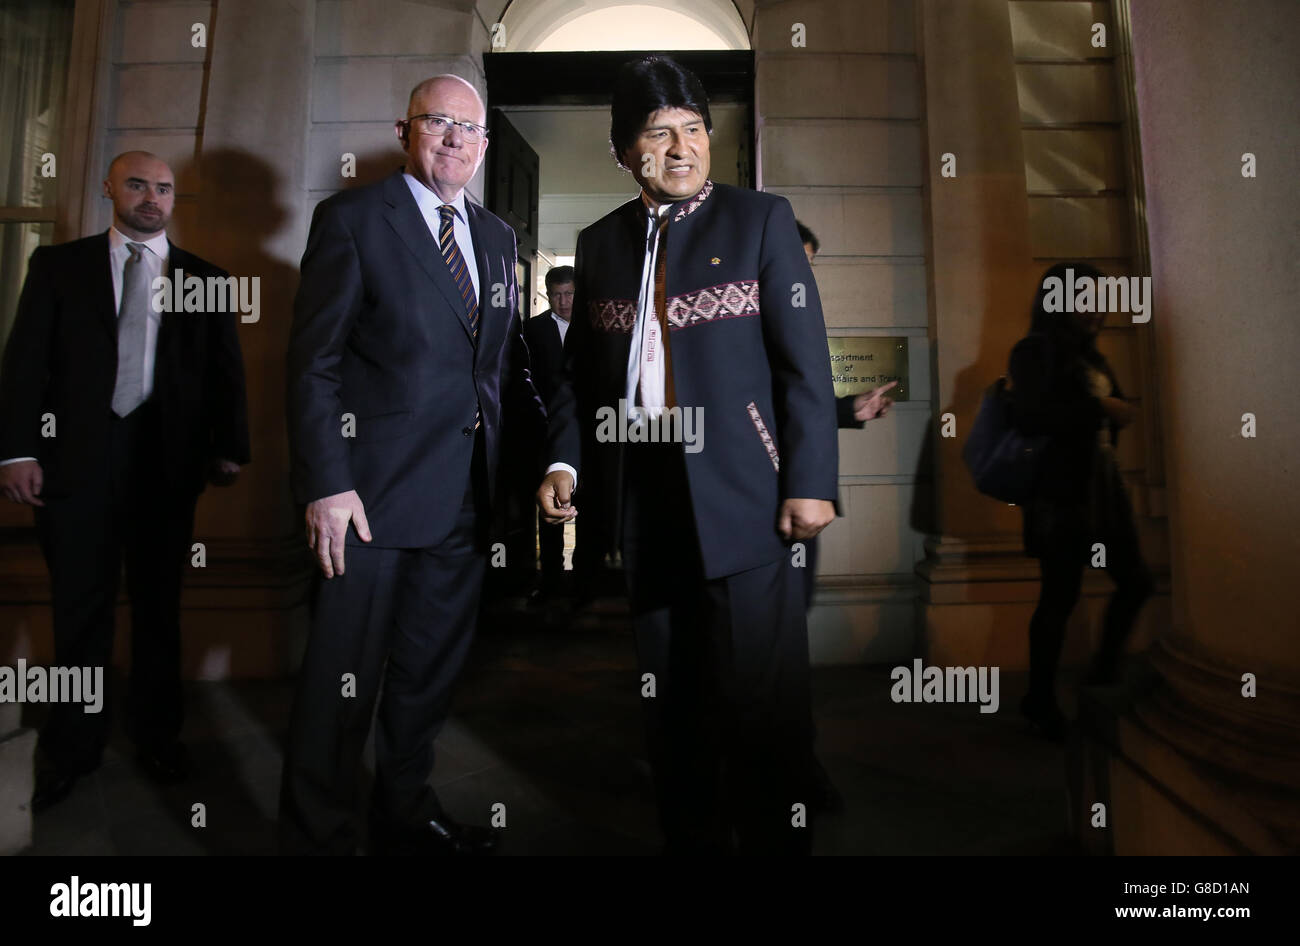 Il ministro degli Affari Esteri Charlie Flanagan (seconda a sinistra) dà il benvenuto al presidente boliviano Evo Morales al Dipartimento degli Affari Esteri di Dublino, Irlanda. Foto Stock